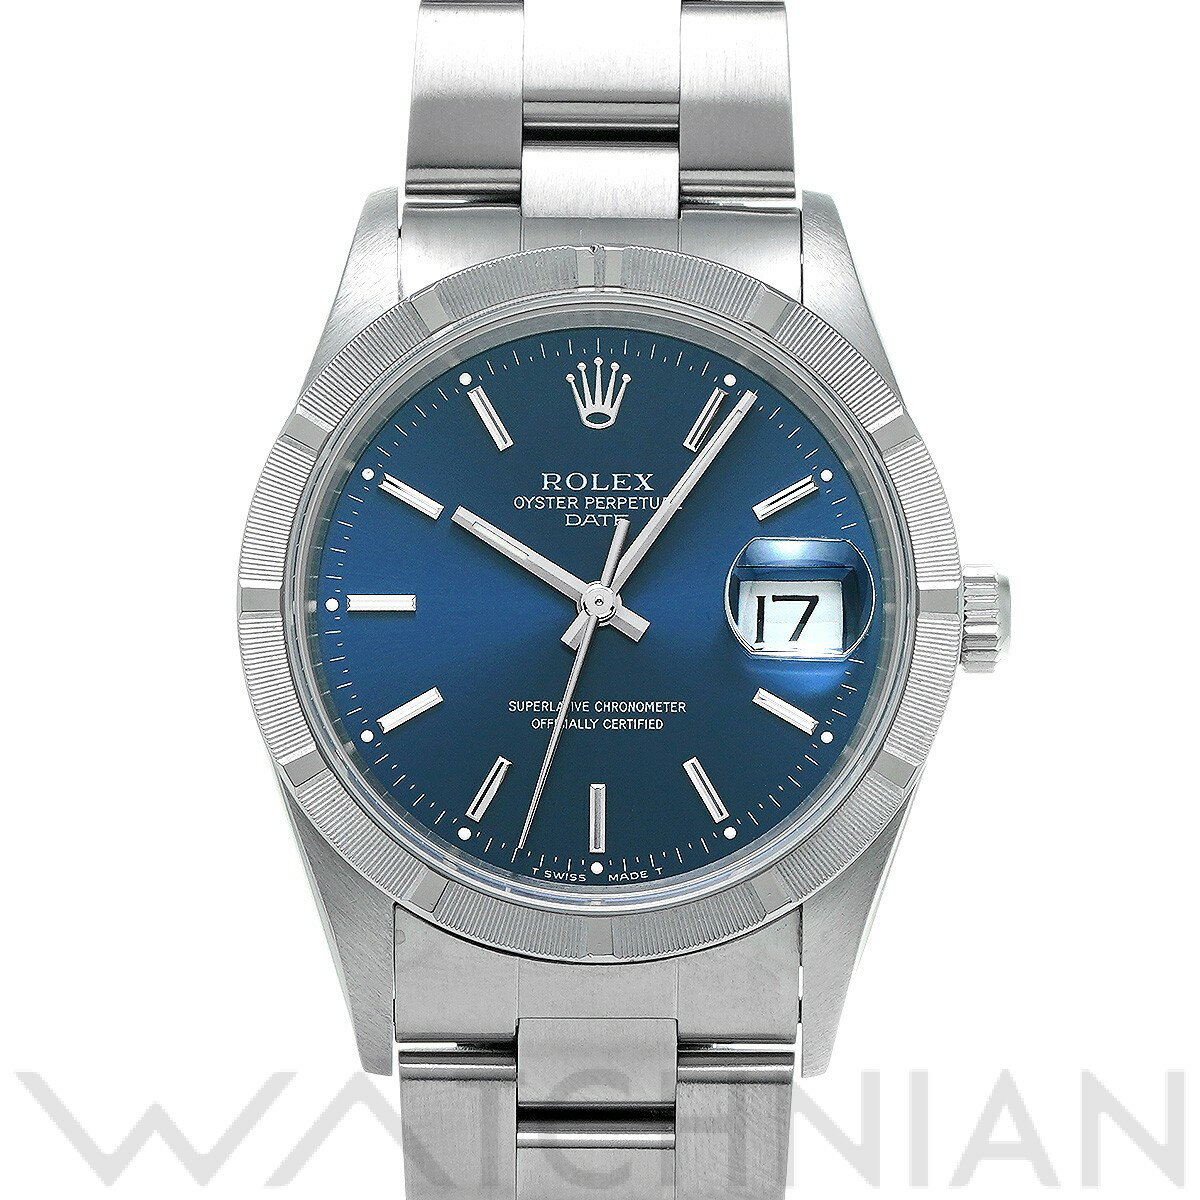 【ローン60回払い無金利】【中古】 ロレックス ROLEX オイスターパーペチュアル デイト 15210 W番(1996年頃製造) ブルー メンズ 腕時計